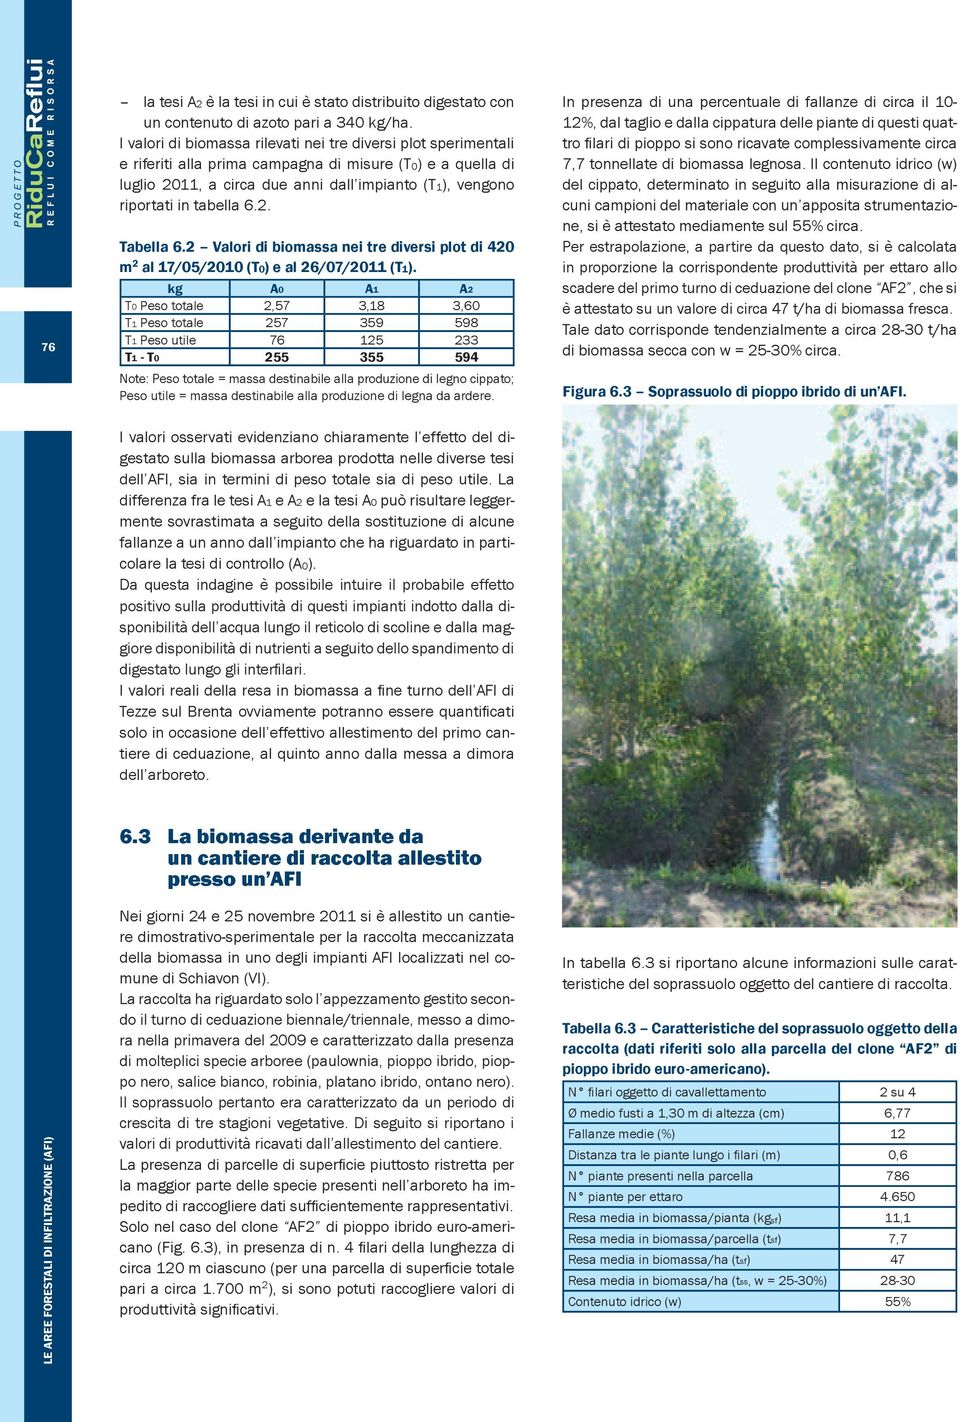 tabella 6.2. Tabella 6.2 Valori di biomassa nei tre diversi plot di 420 m 2 al 17/05/2010 (T0) e al 26/07/2011 (T1).